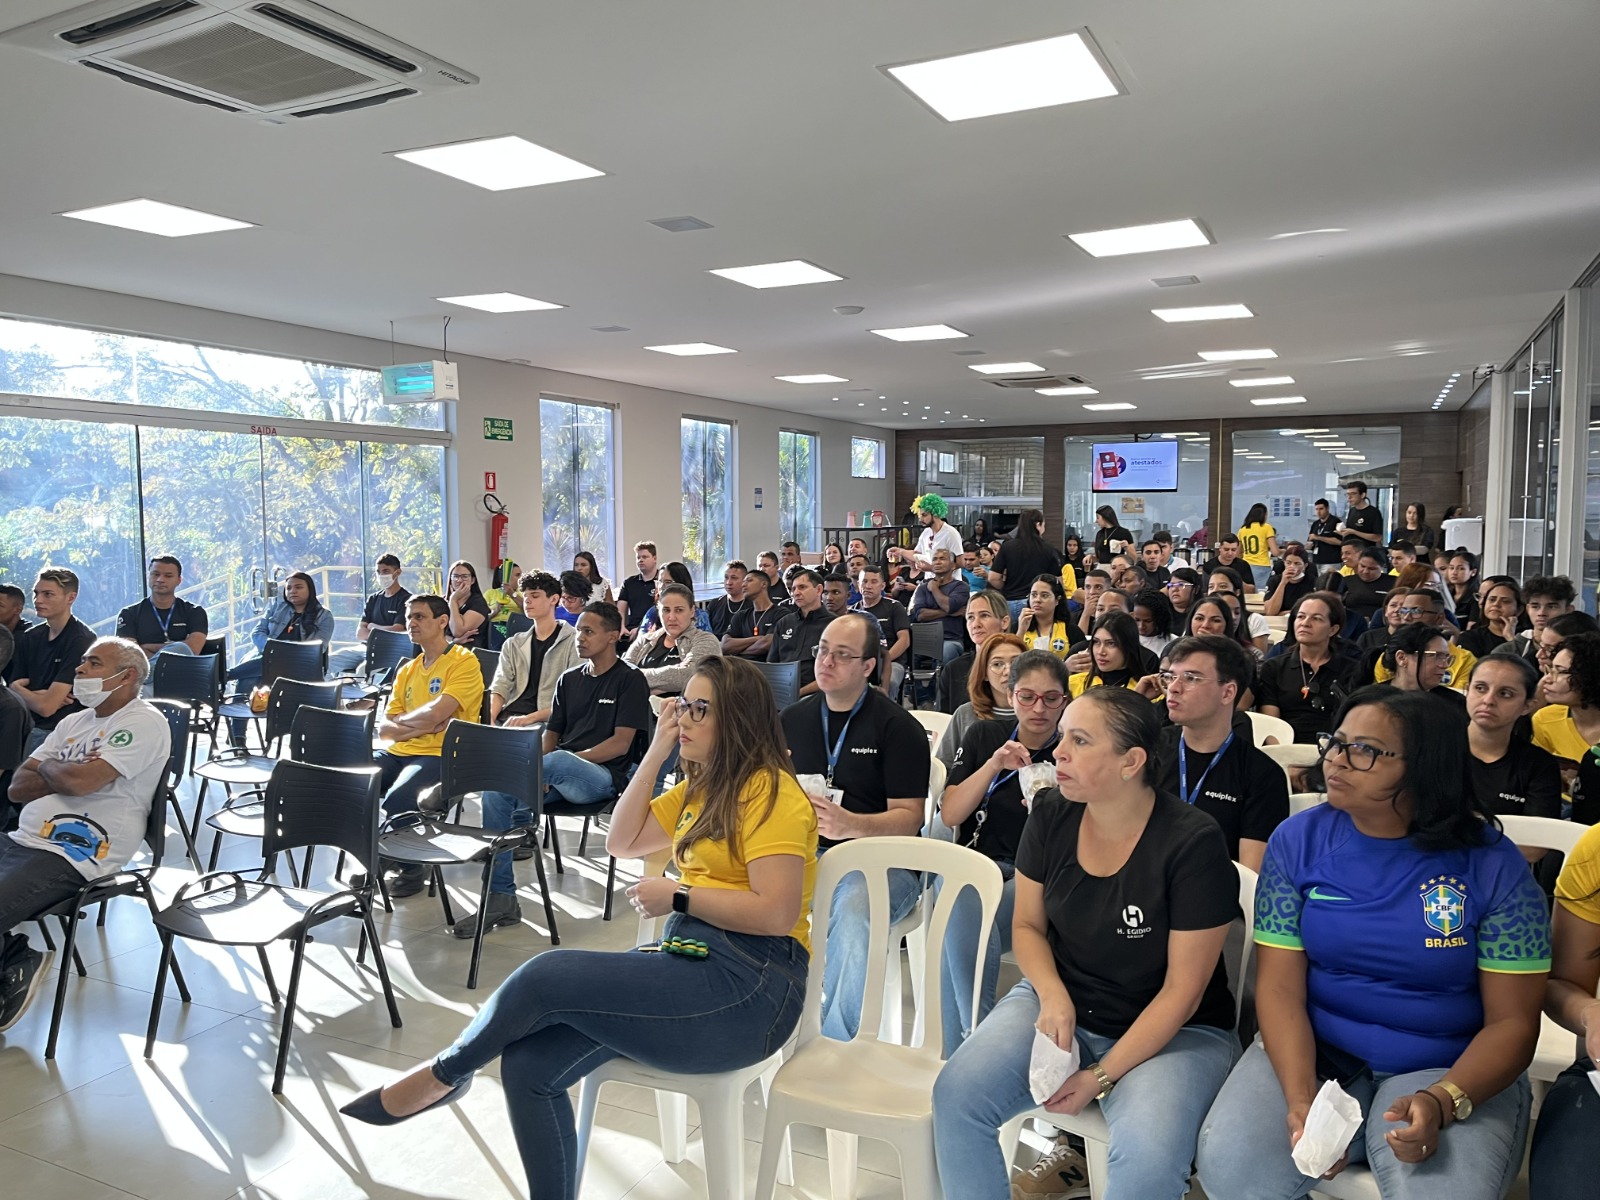 Prefeitura de Goiânia define regras para expediente em dias de jogos do  Brasil na Copa Mundo; veja horários, Goiás